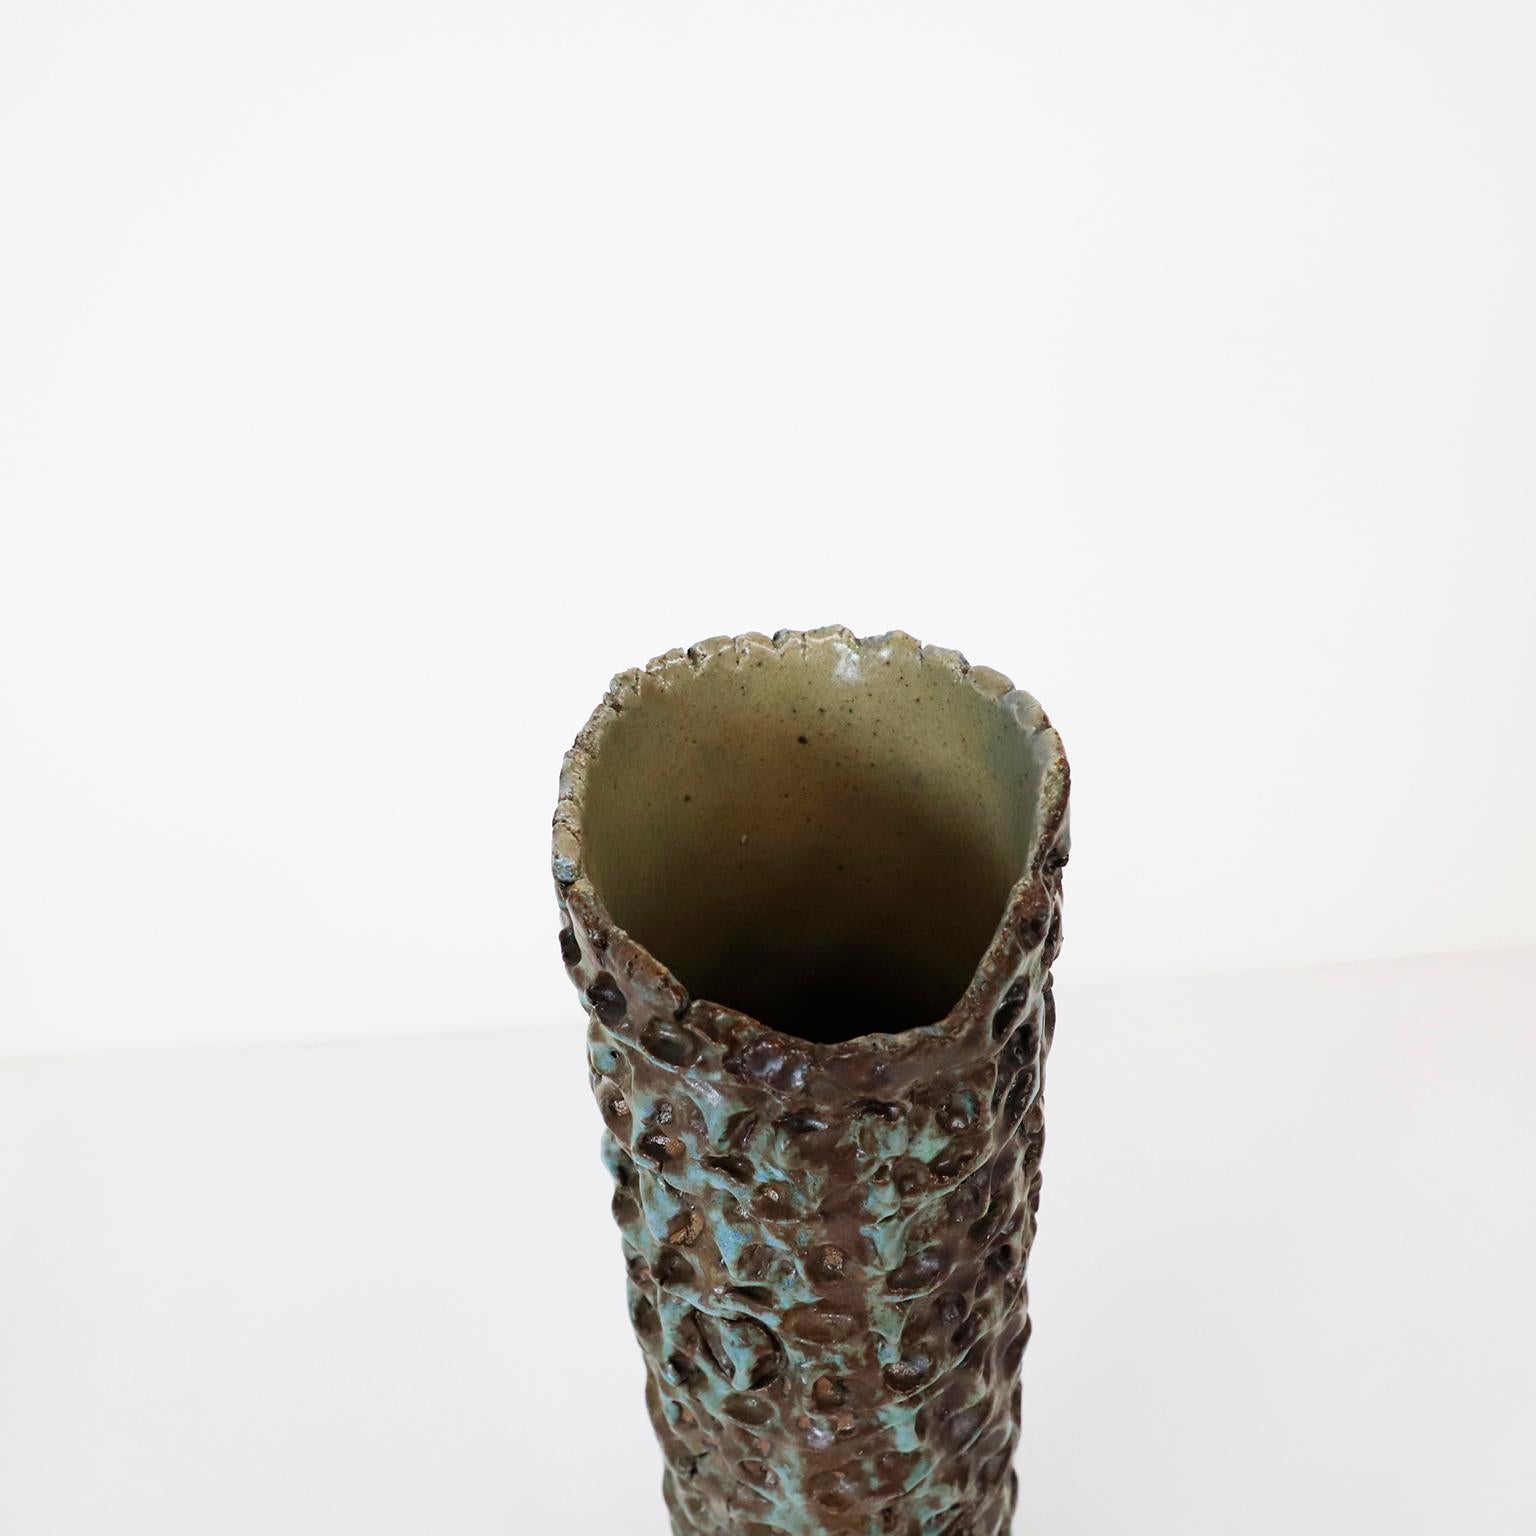 Circa 1970, We offer this Large Ceramic Stoneware Vase.